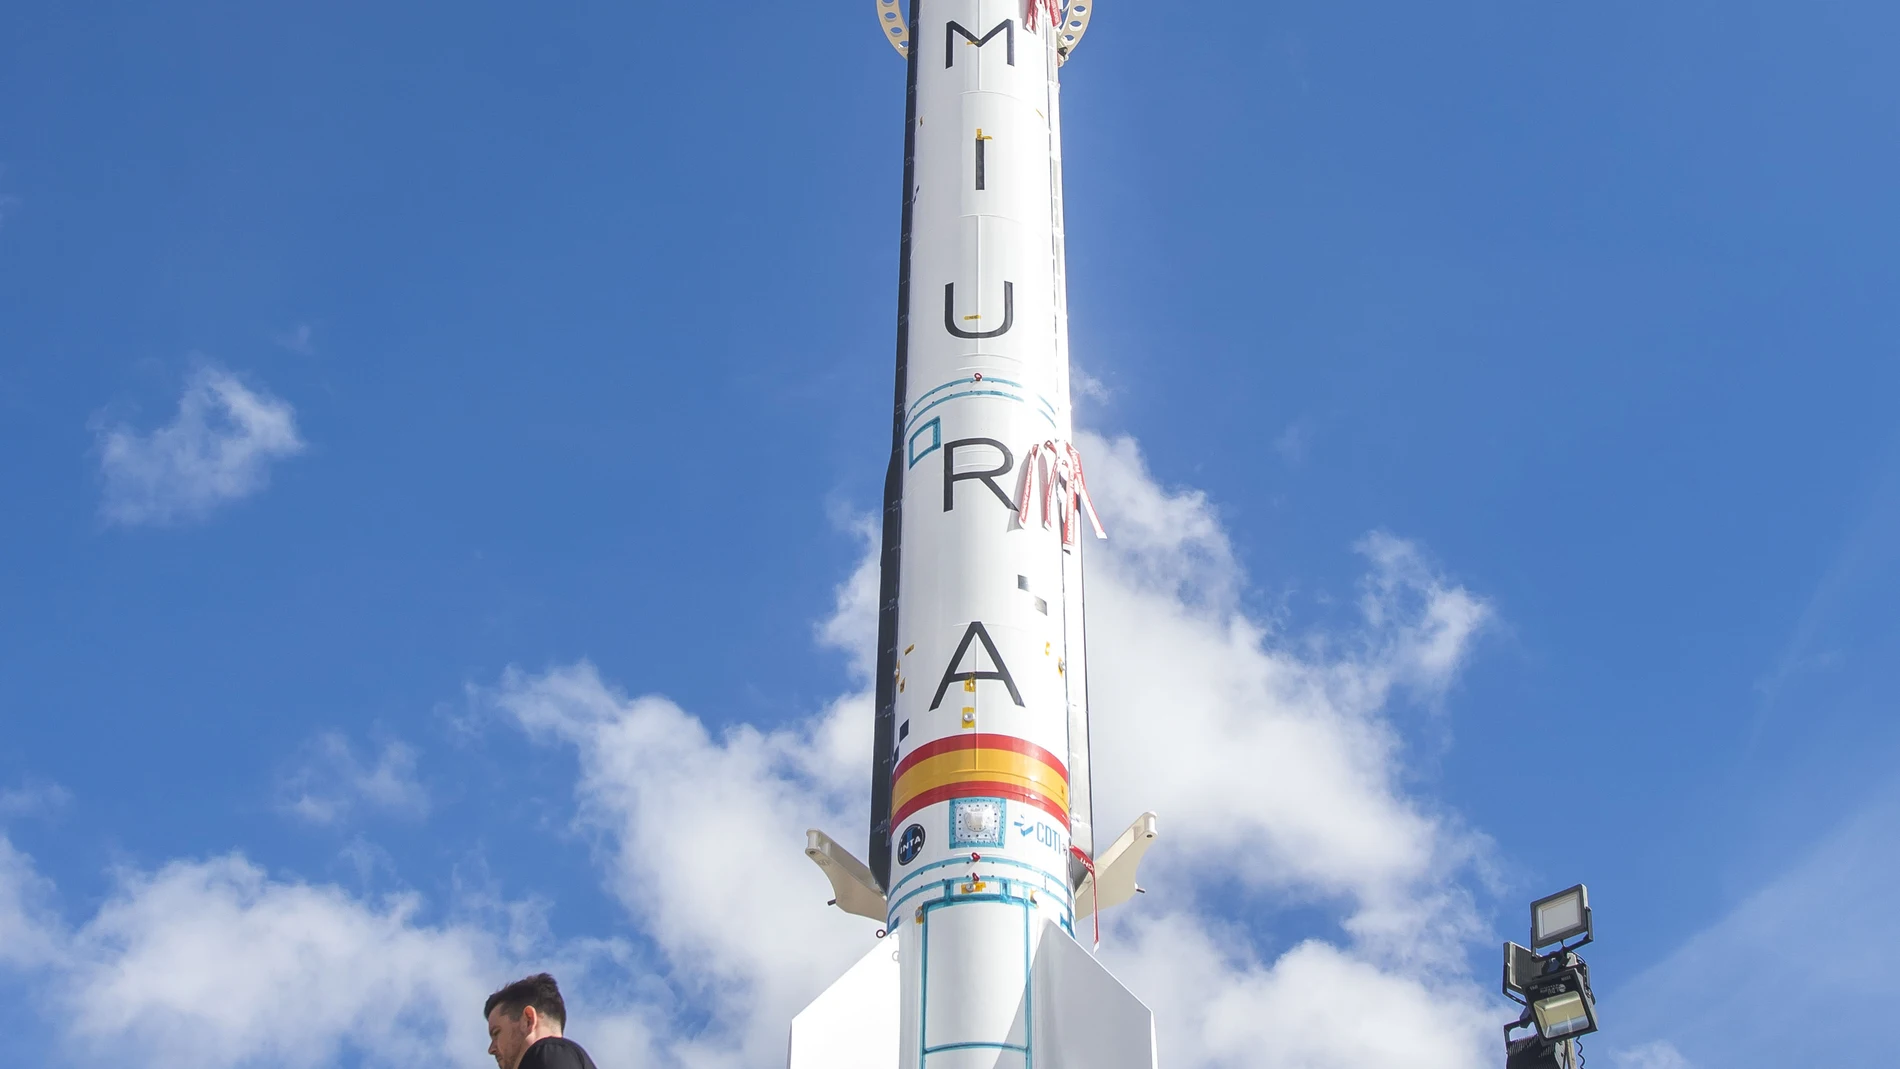 El lanzamiento del cohete español Miura 1 desde Huelva está previsto para la mañana de este miércoles